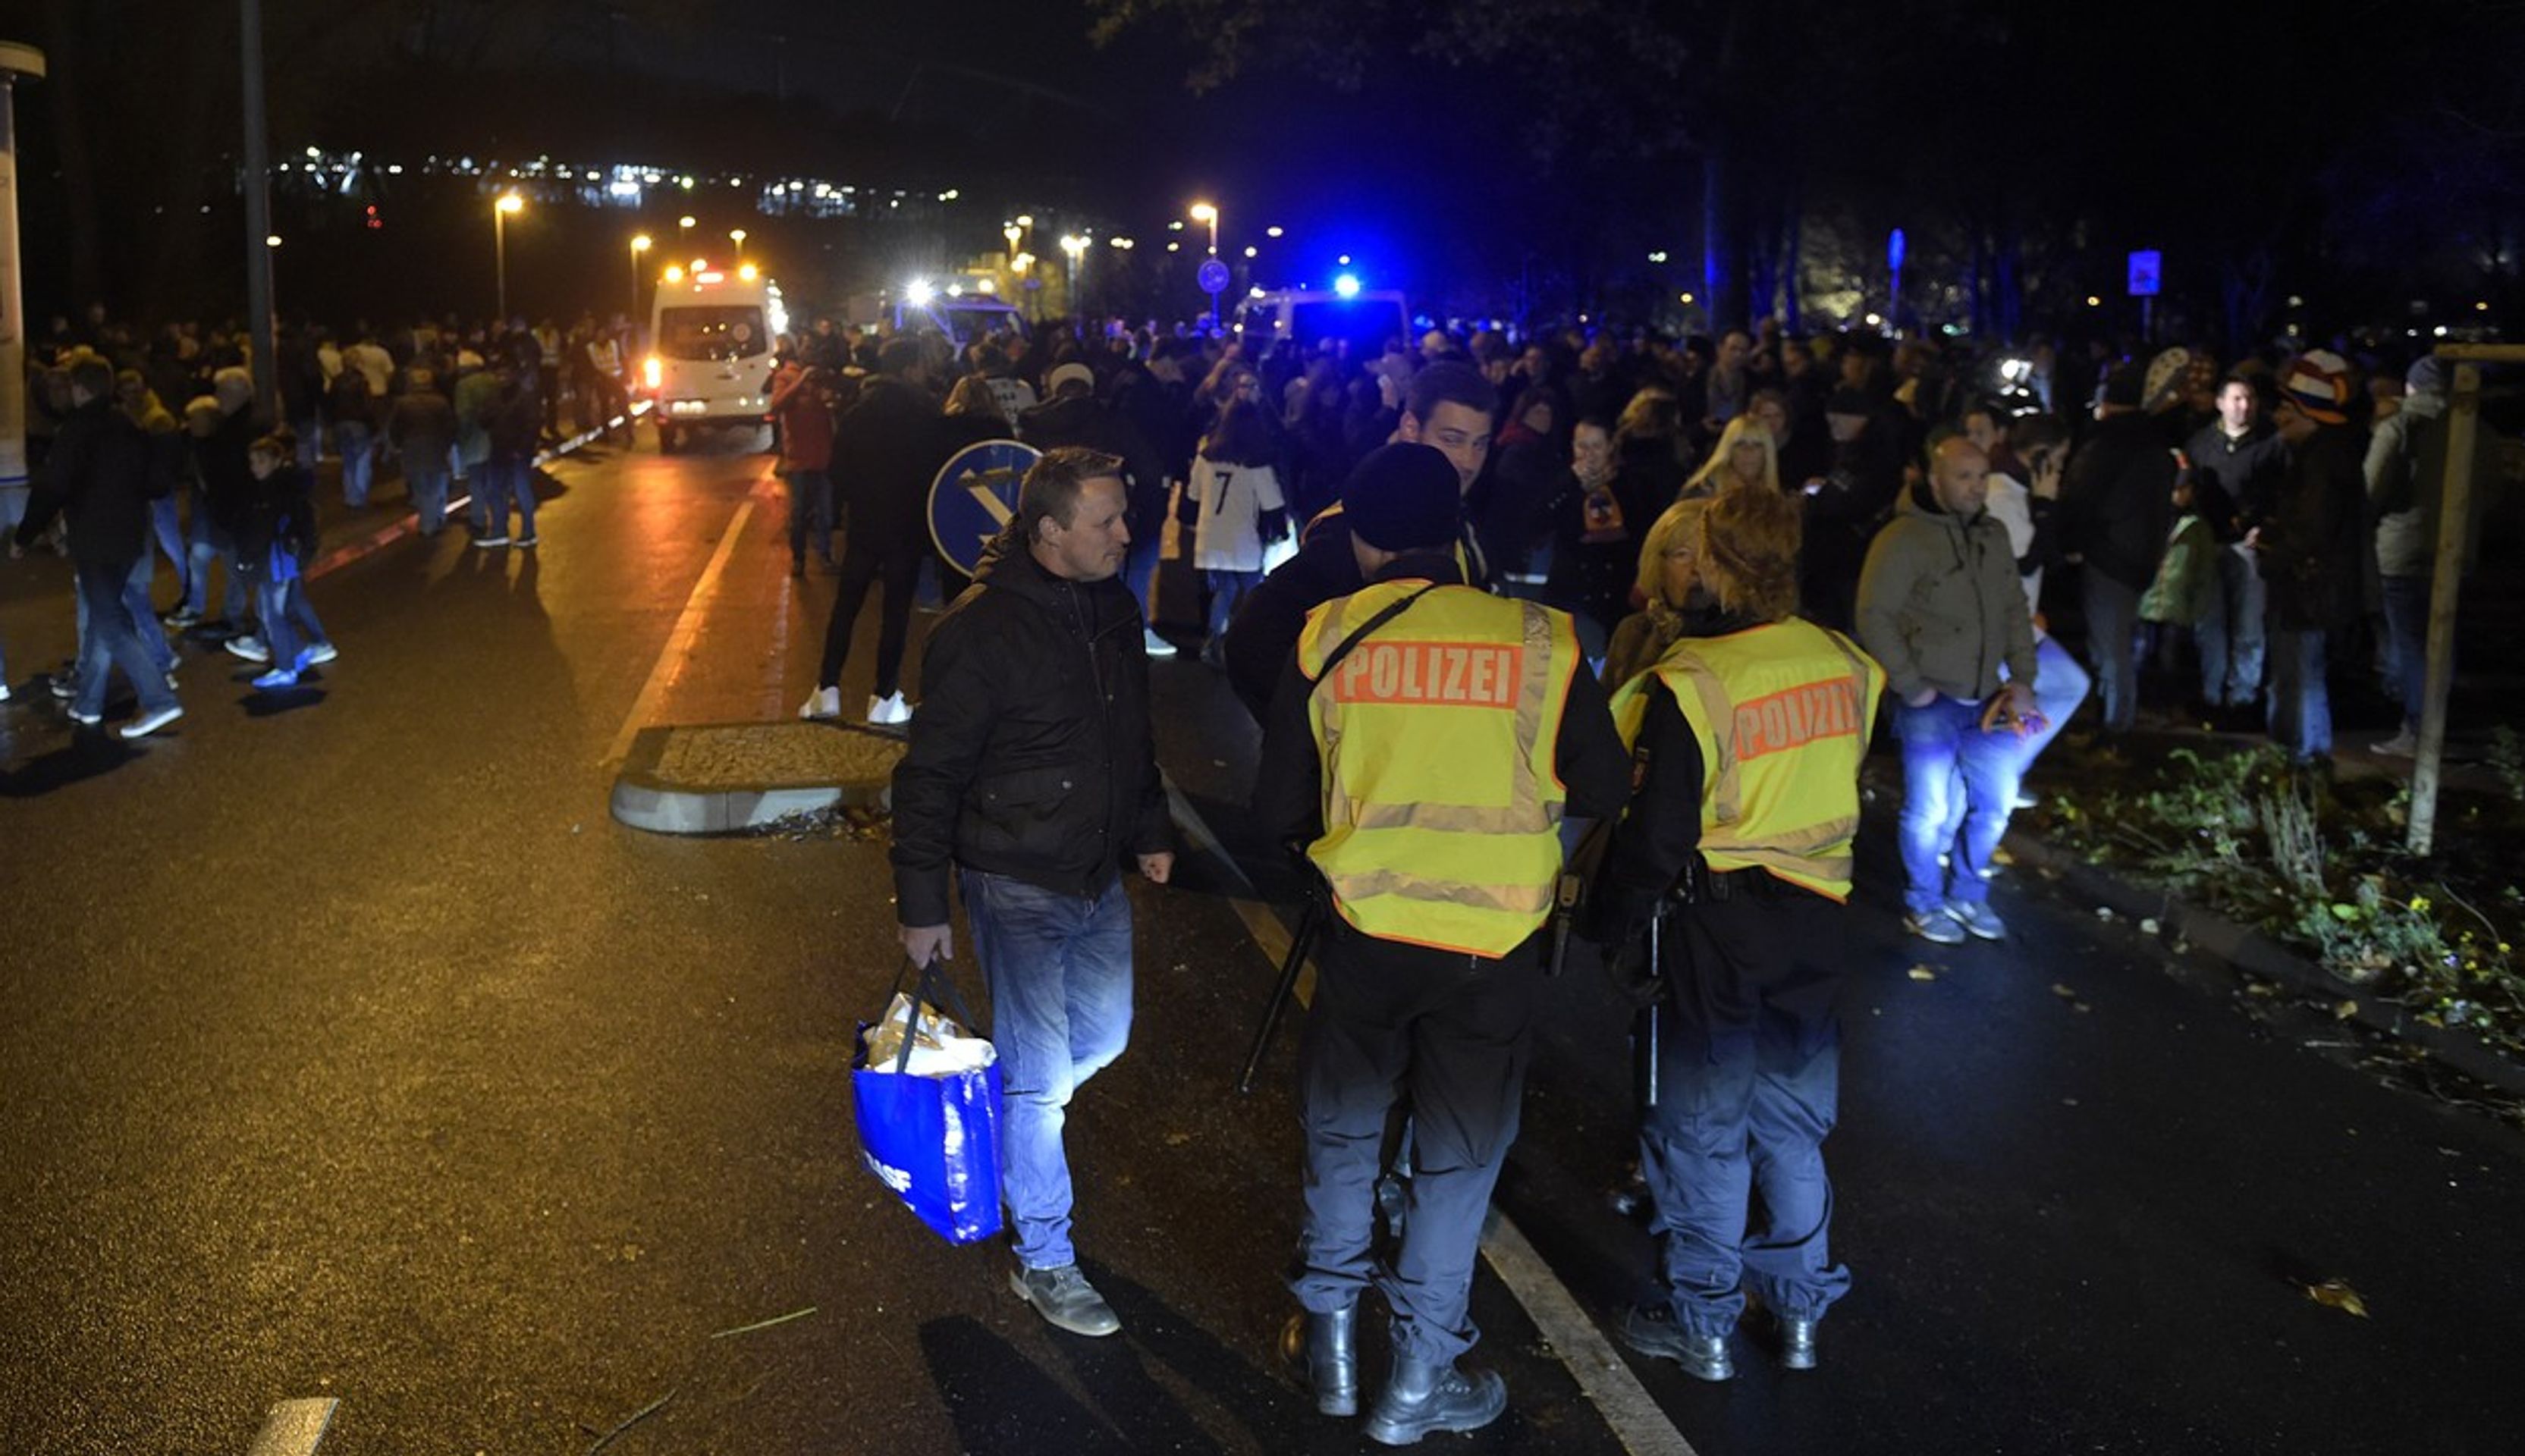 Fanoušci opouštějí stadion po zrušení zápasu mezi Německem a Nizozemskem - GALERIE: Policejní manévry na stadionu v Hannoveru (1/7)